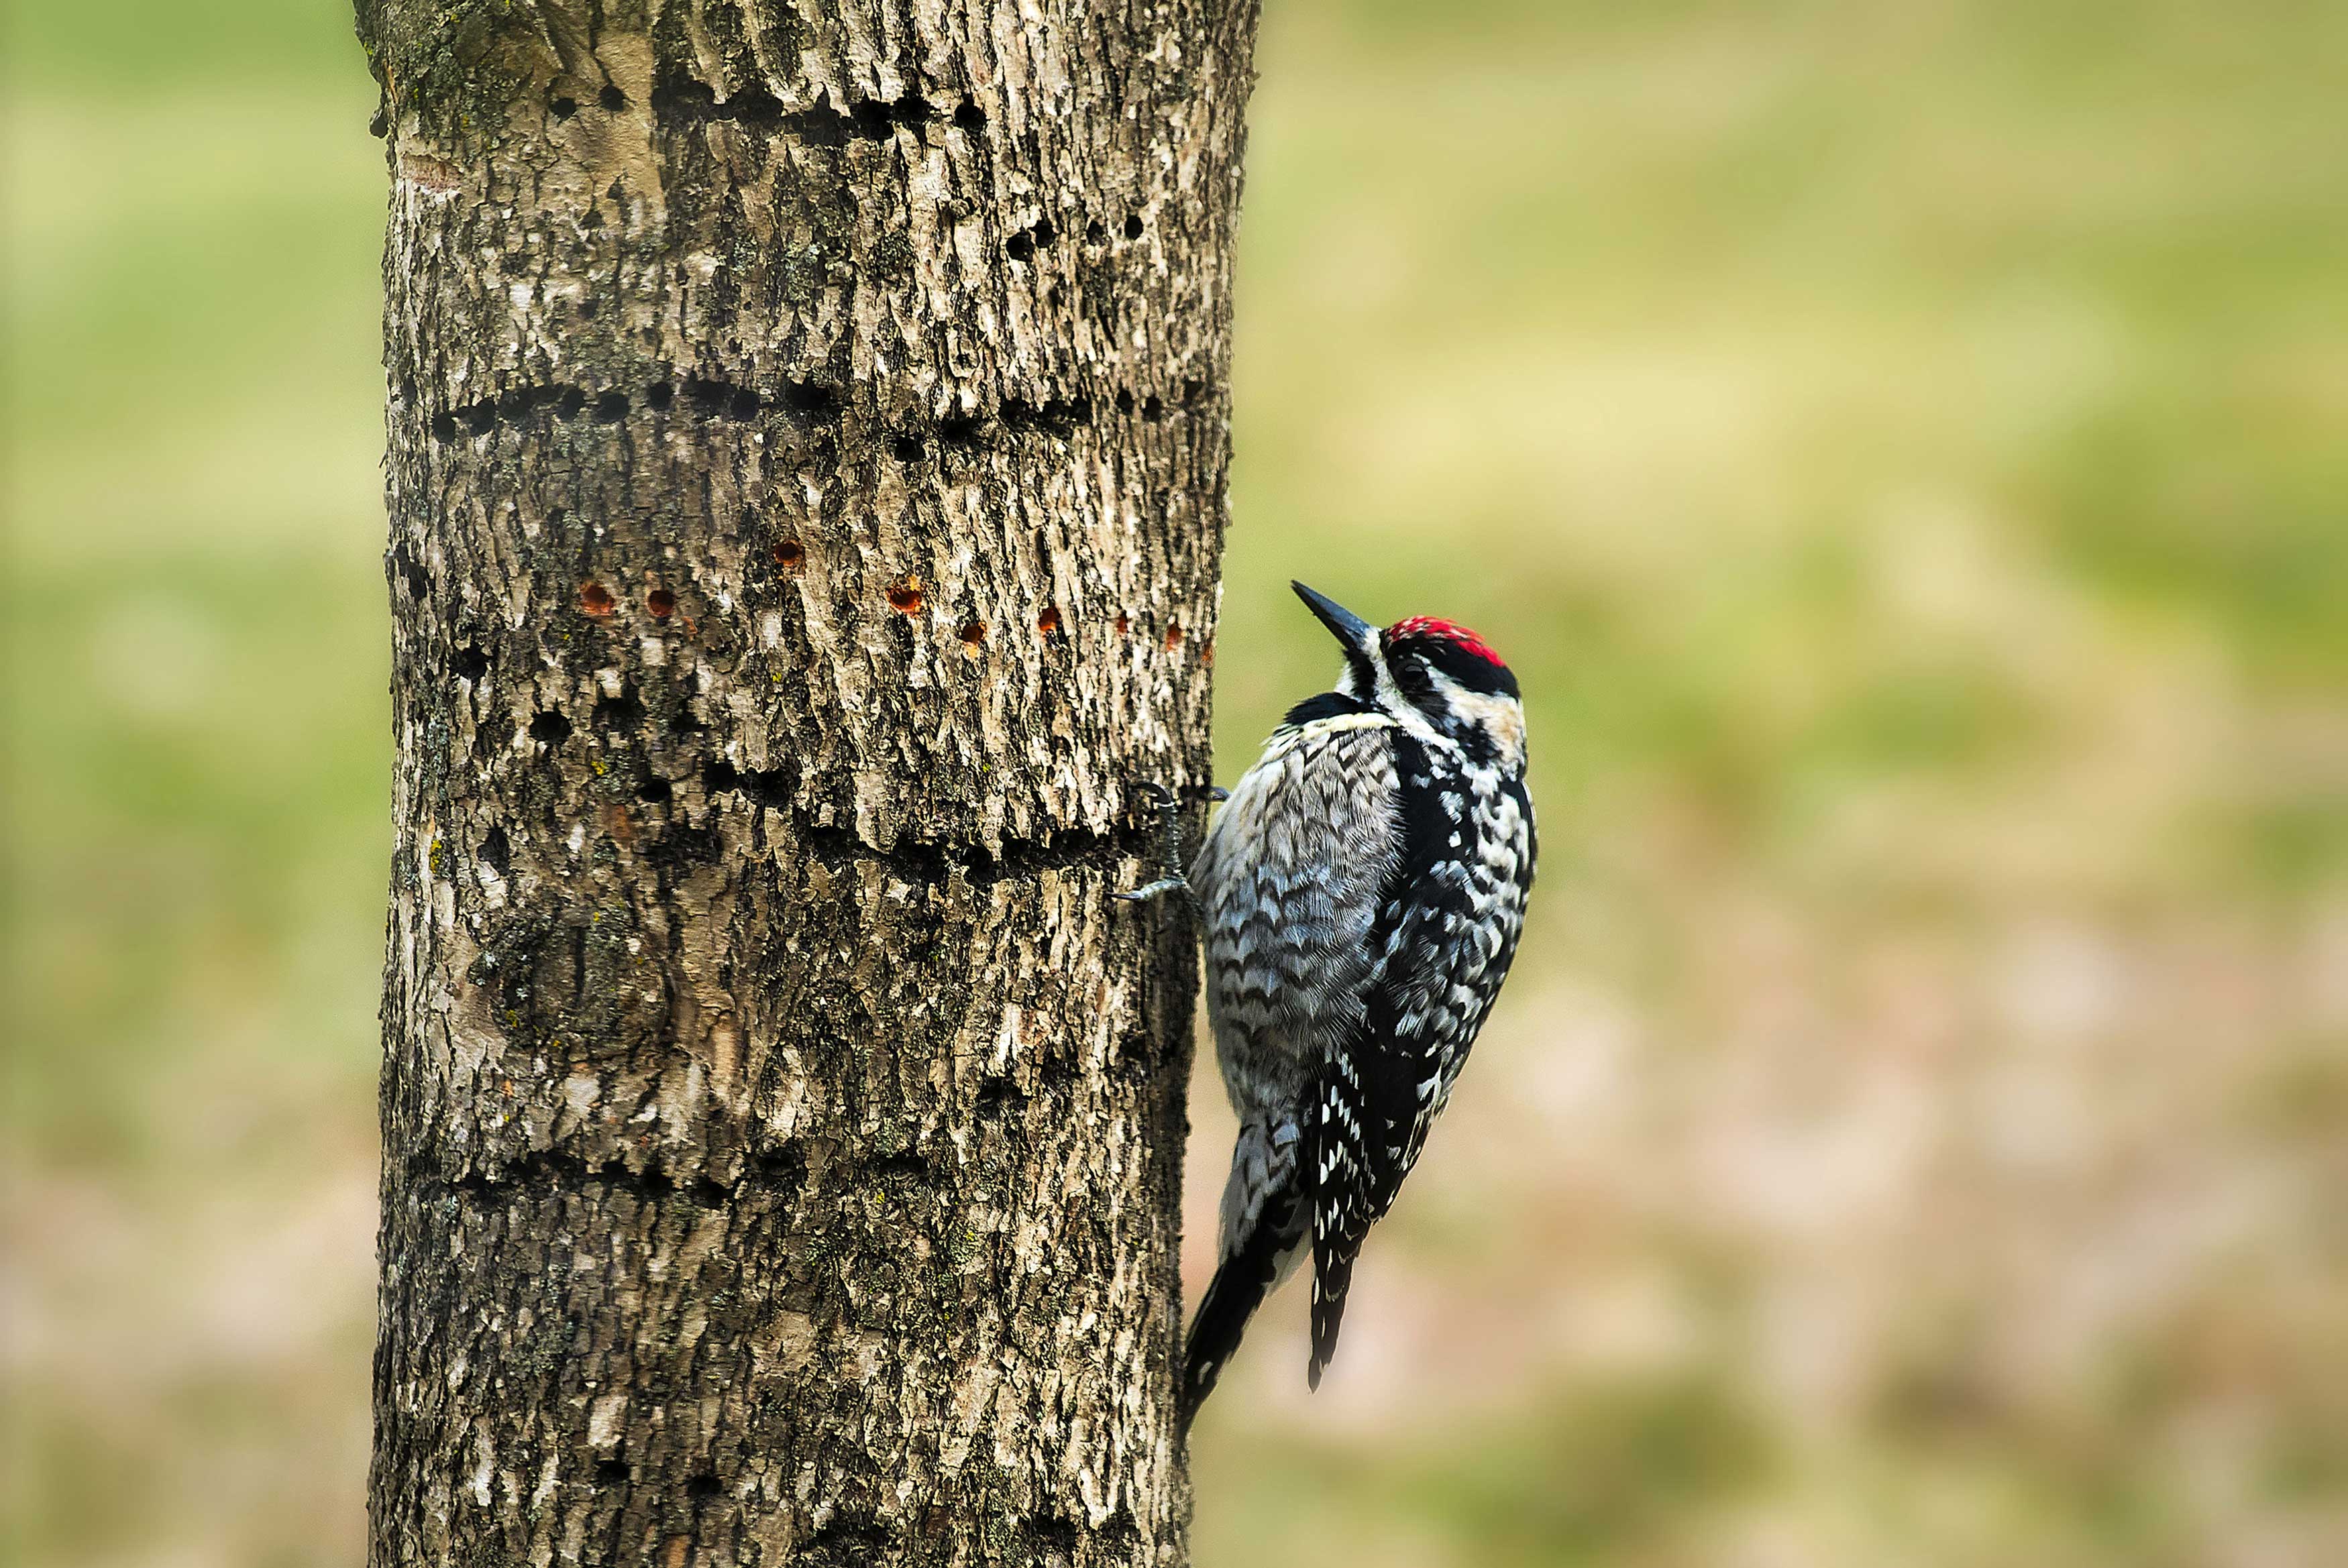 A yellow-bellied woodpecker on tree bark.